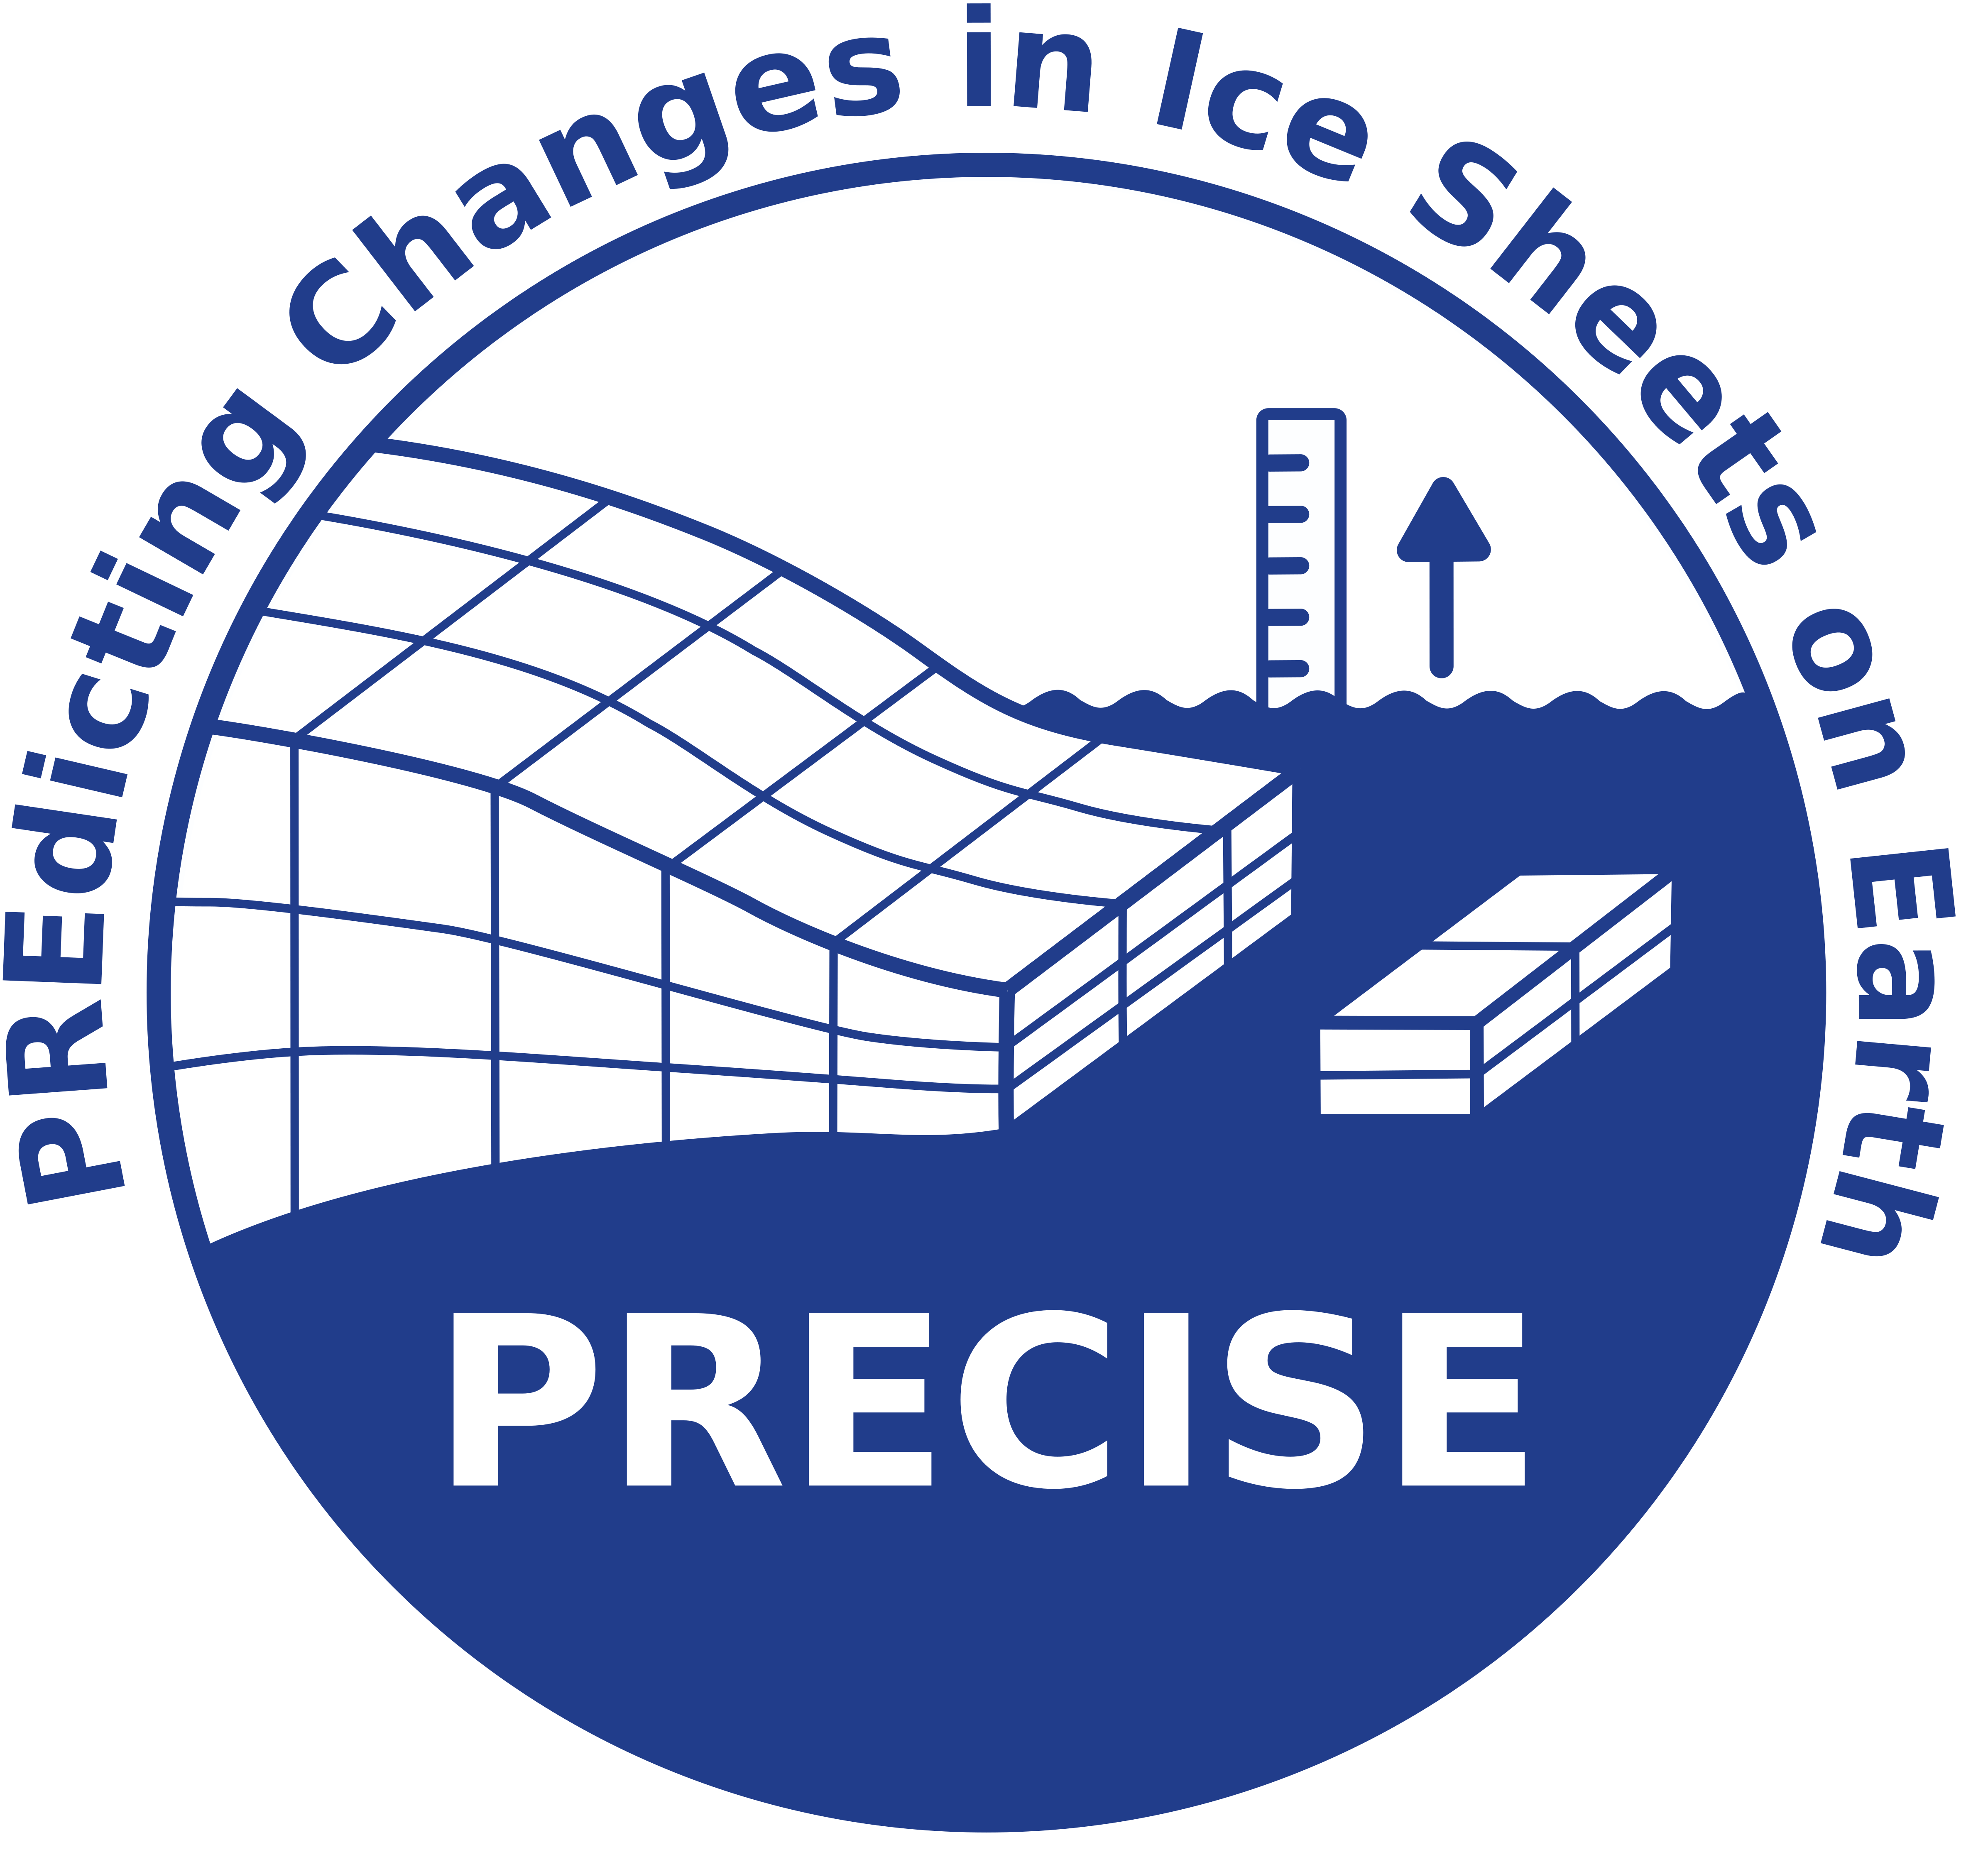 PRECISE logo